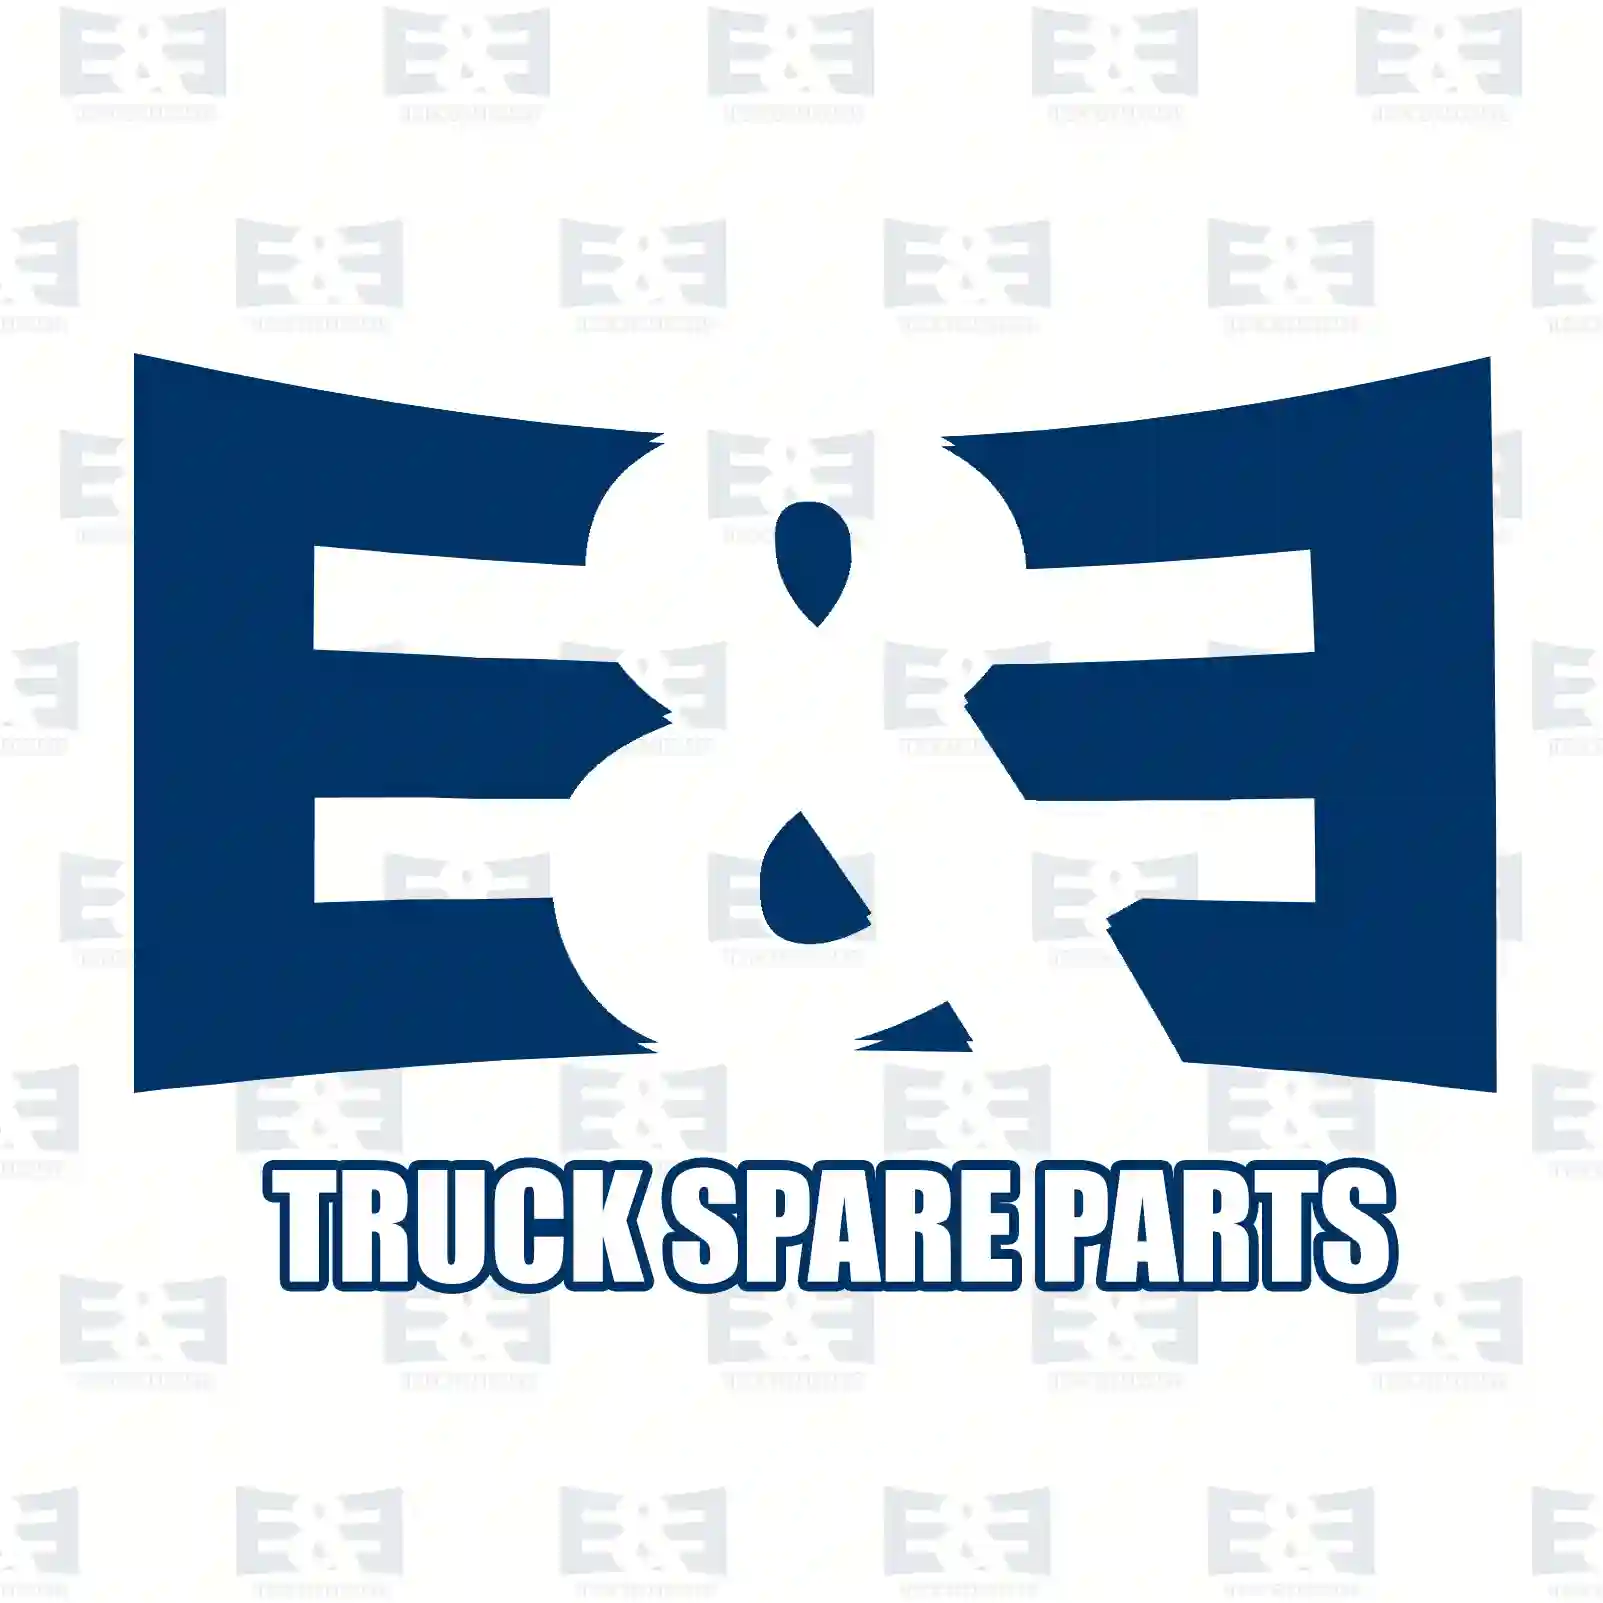 Oil seal, 2E2277411, 1349089, ZG02619-0008, ||  2E2277411 E&E Truck Spare Parts | Truck Spare Parts, Auotomotive Spare Parts Oil seal, 2E2277411, 1349089, ZG02619-0008, ||  2E2277411 E&E Truck Spare Parts | Truck Spare Parts, Auotomotive Spare Parts